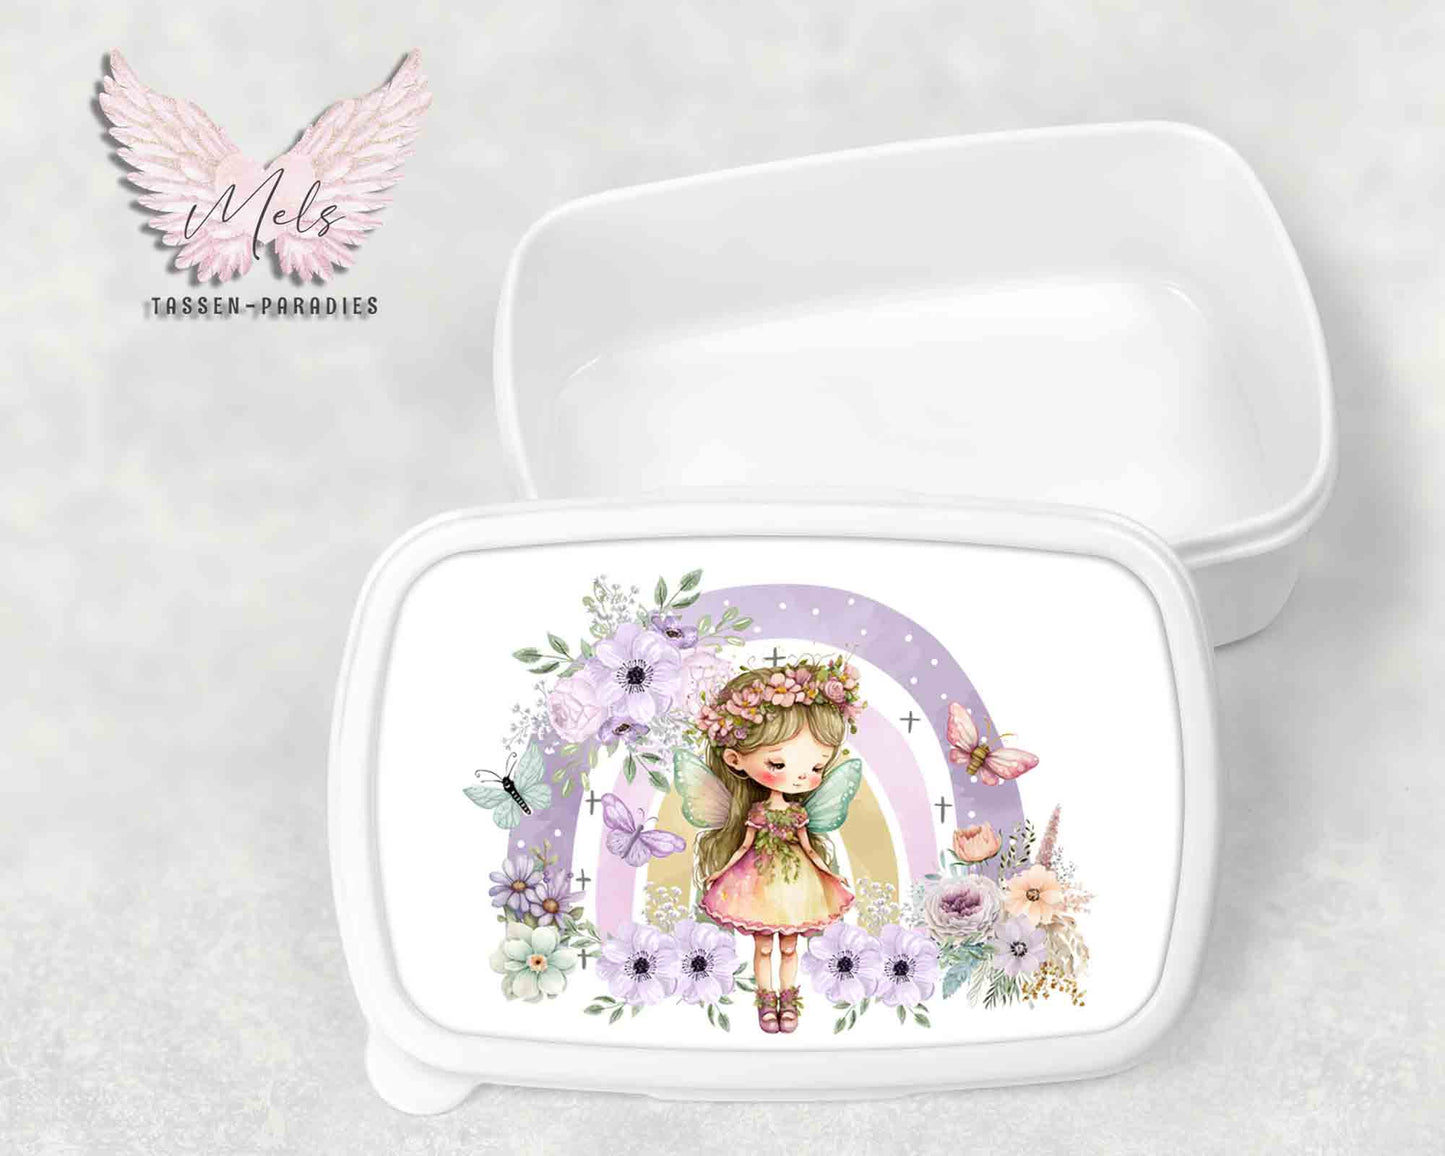 Fee - Prinzessin 3 - Personalisierte Kinder-Brotbox / Lunchbox weiß mit und ohne Name